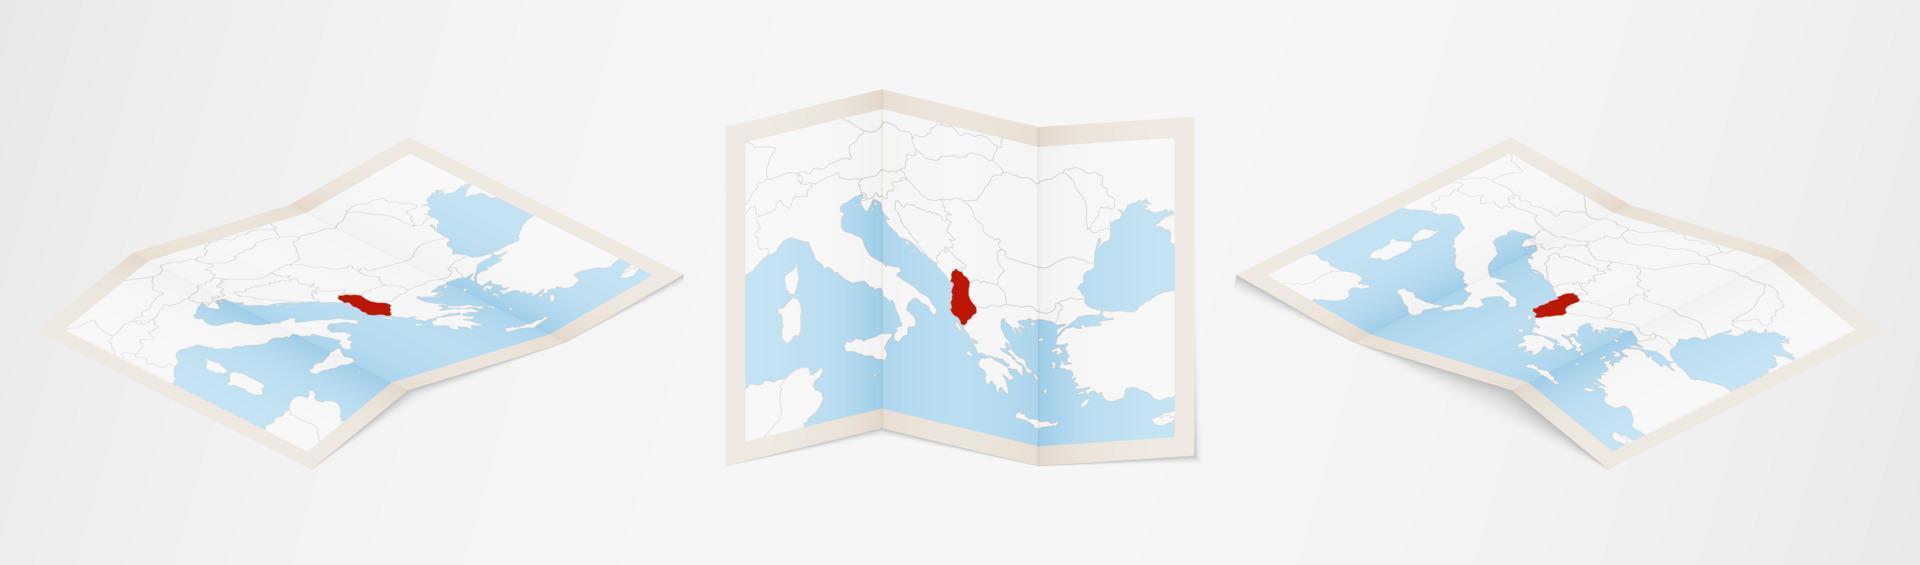 mapa plegado de albania en tres versiones diferentes. vector